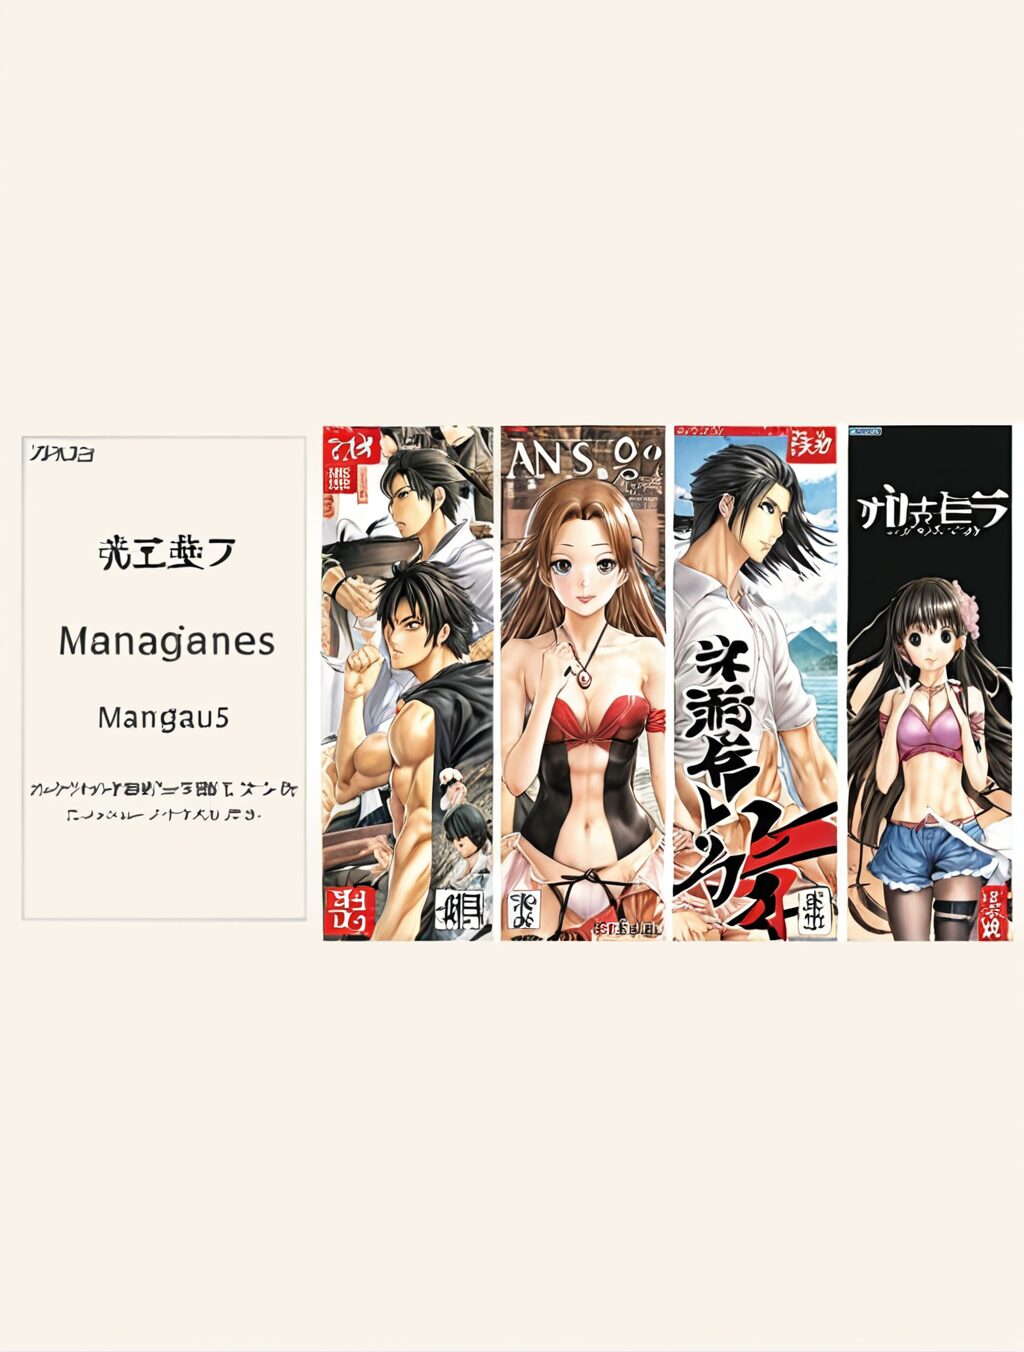 where can i buy manga in japanese